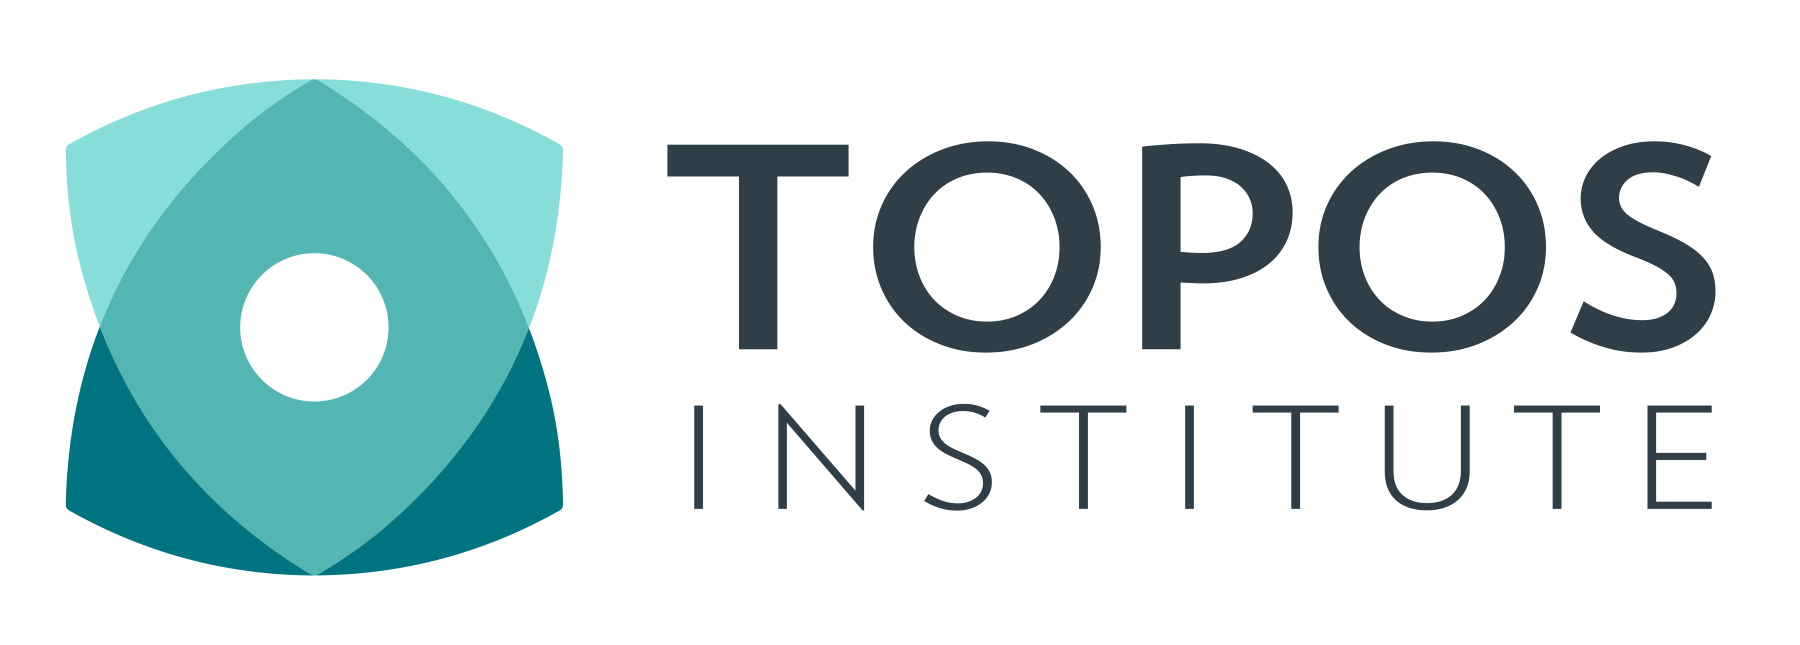 Topos Institute